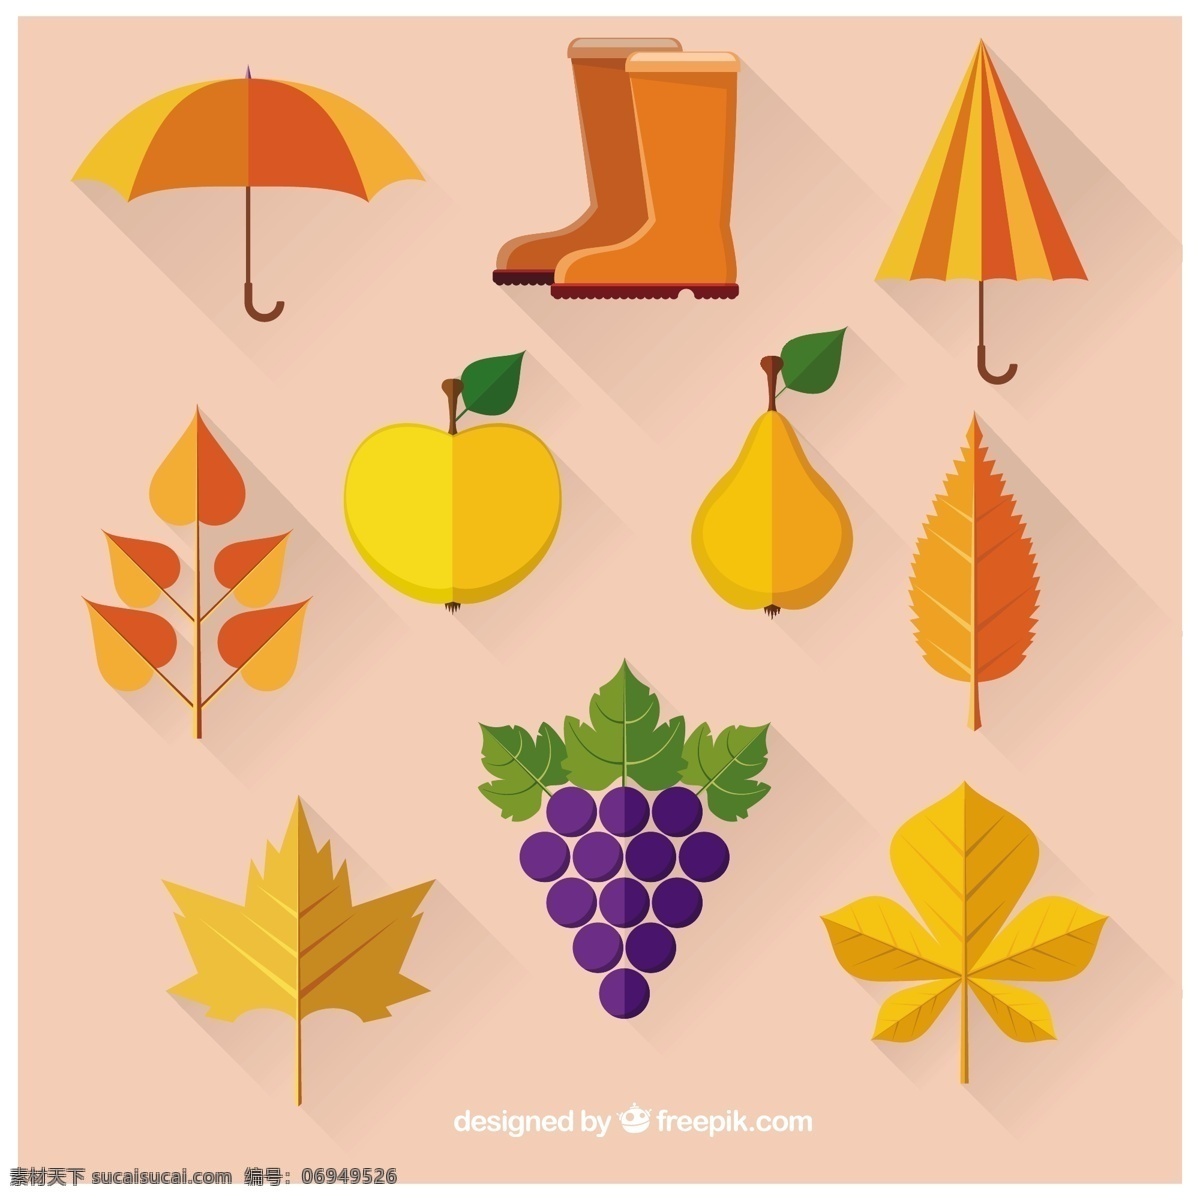 秋天 元素 集合 自然 叶子 水果 苹果 树叶 雨伞 葡萄 靴子 秋天的落叶 季节 梨 收集 粉色